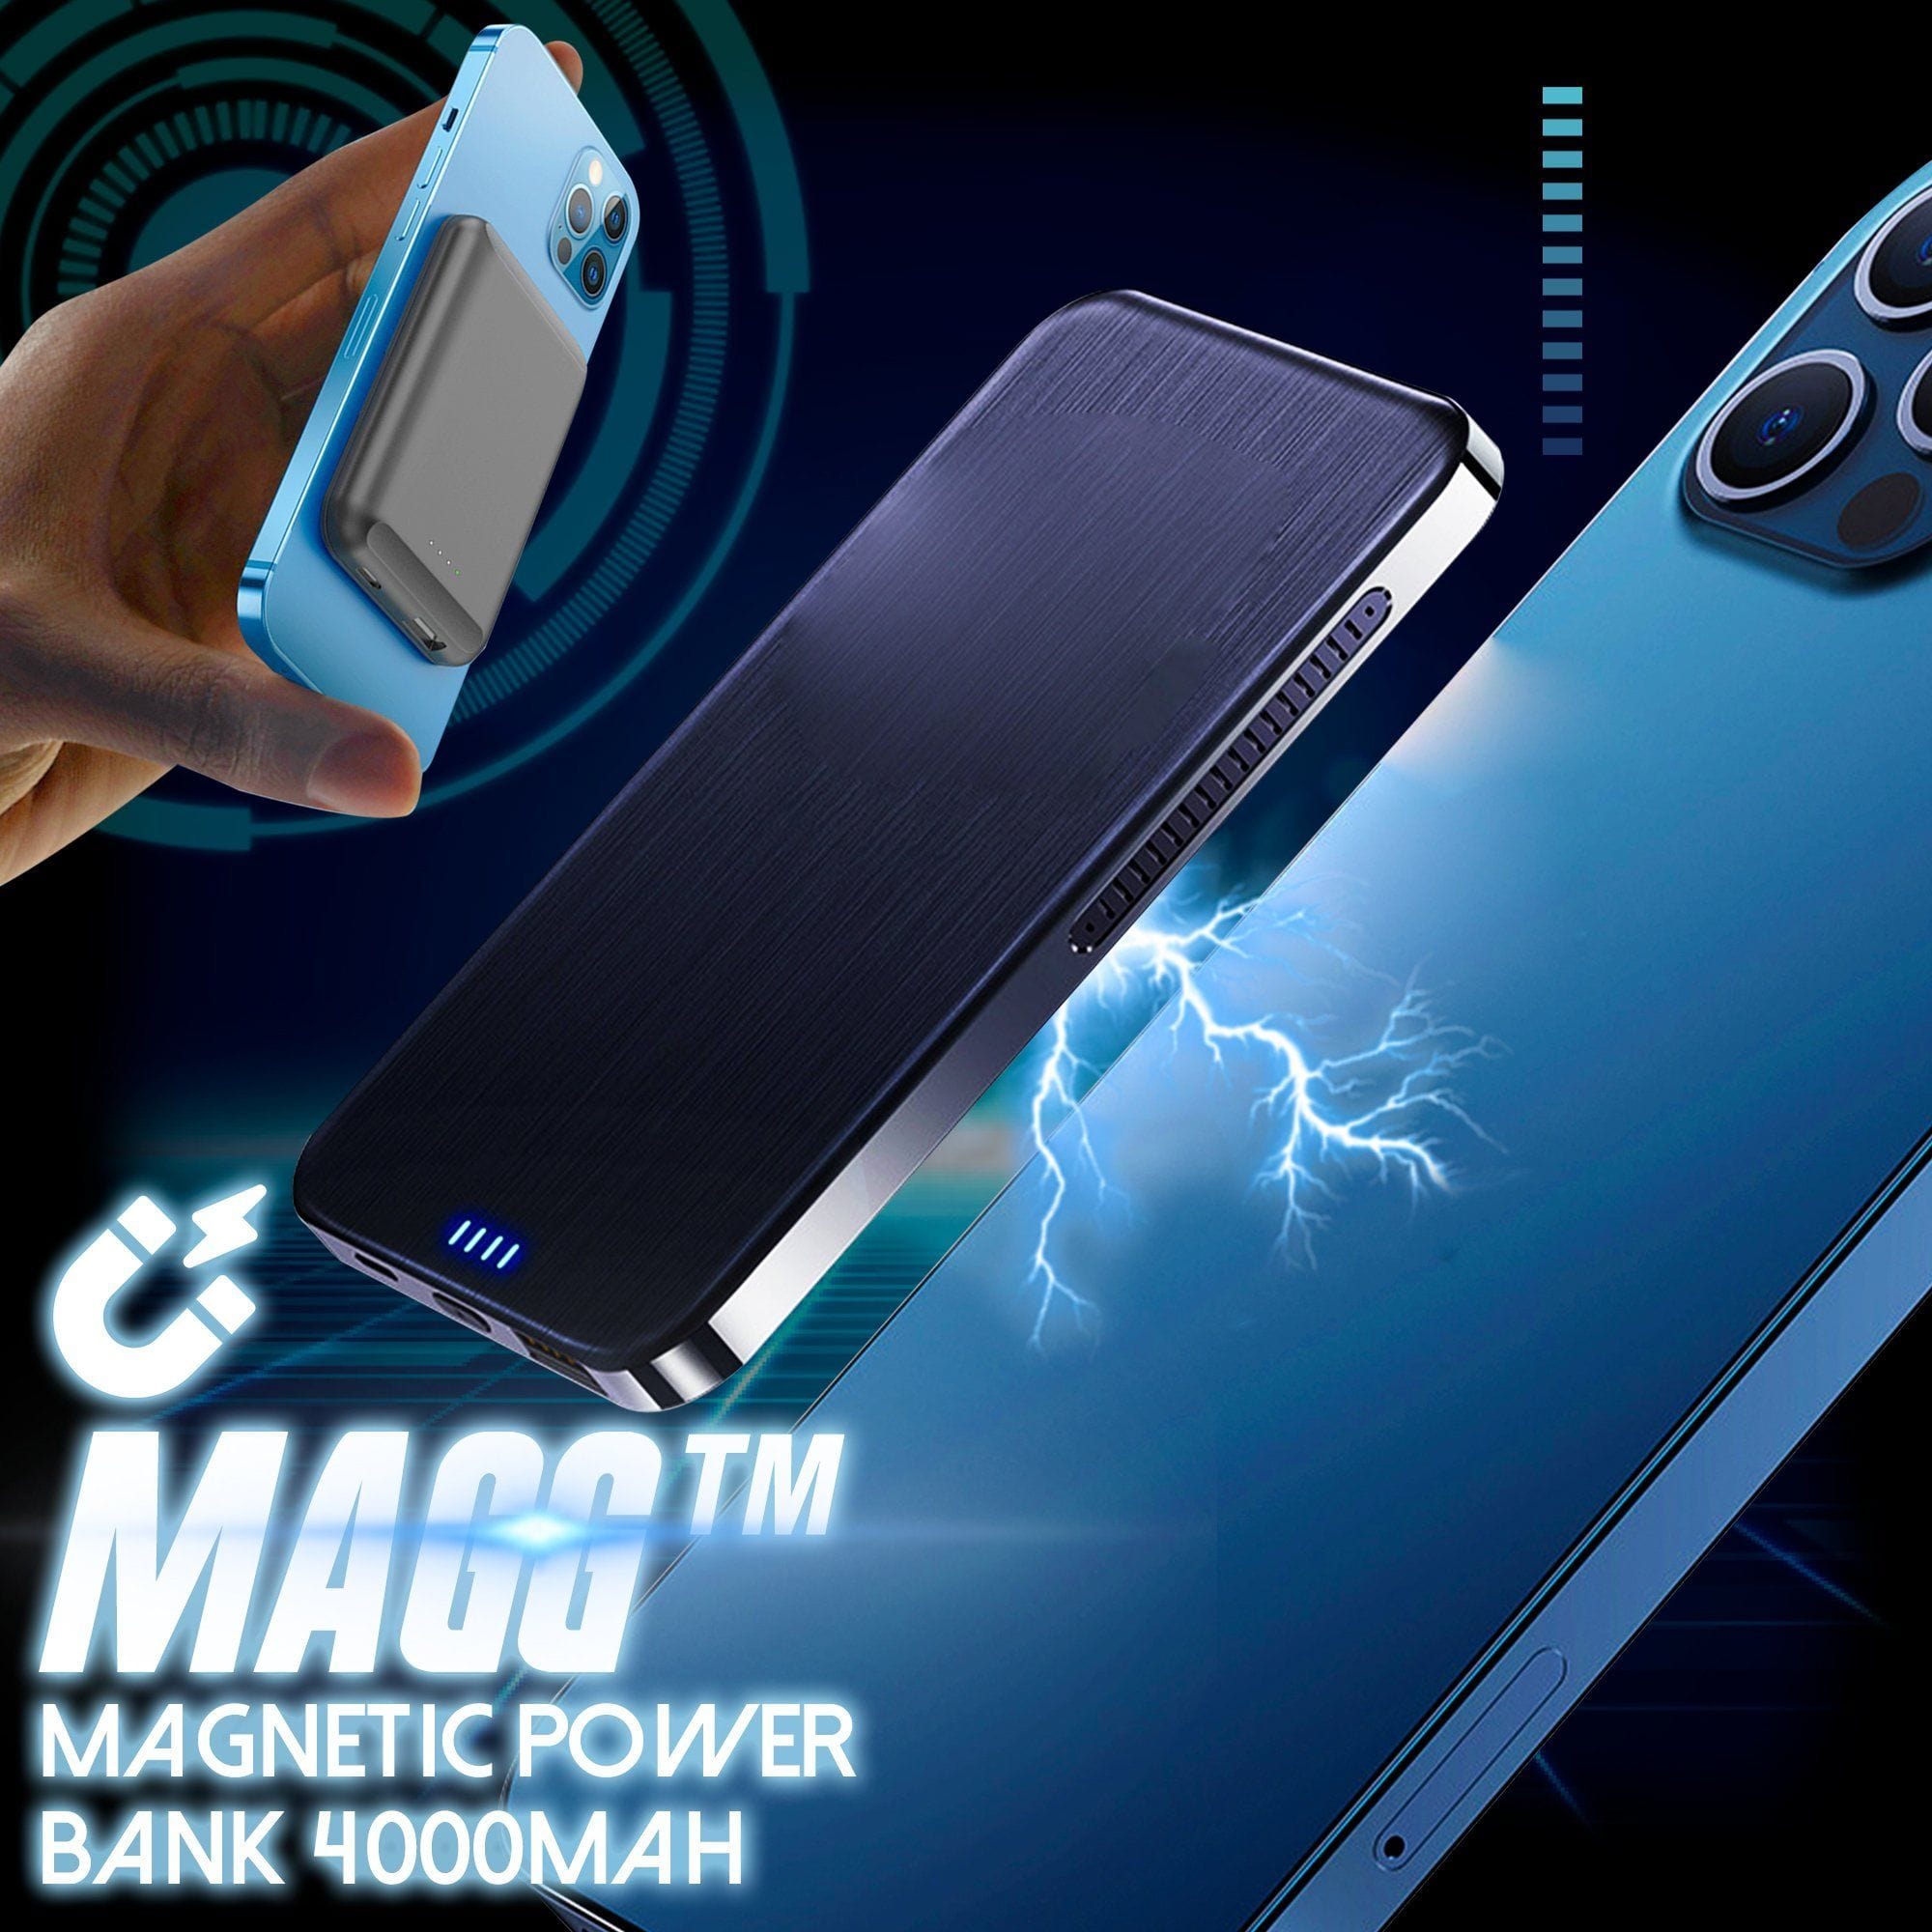 MAGG Draadloze Magnetische Powerbank 4000mAh